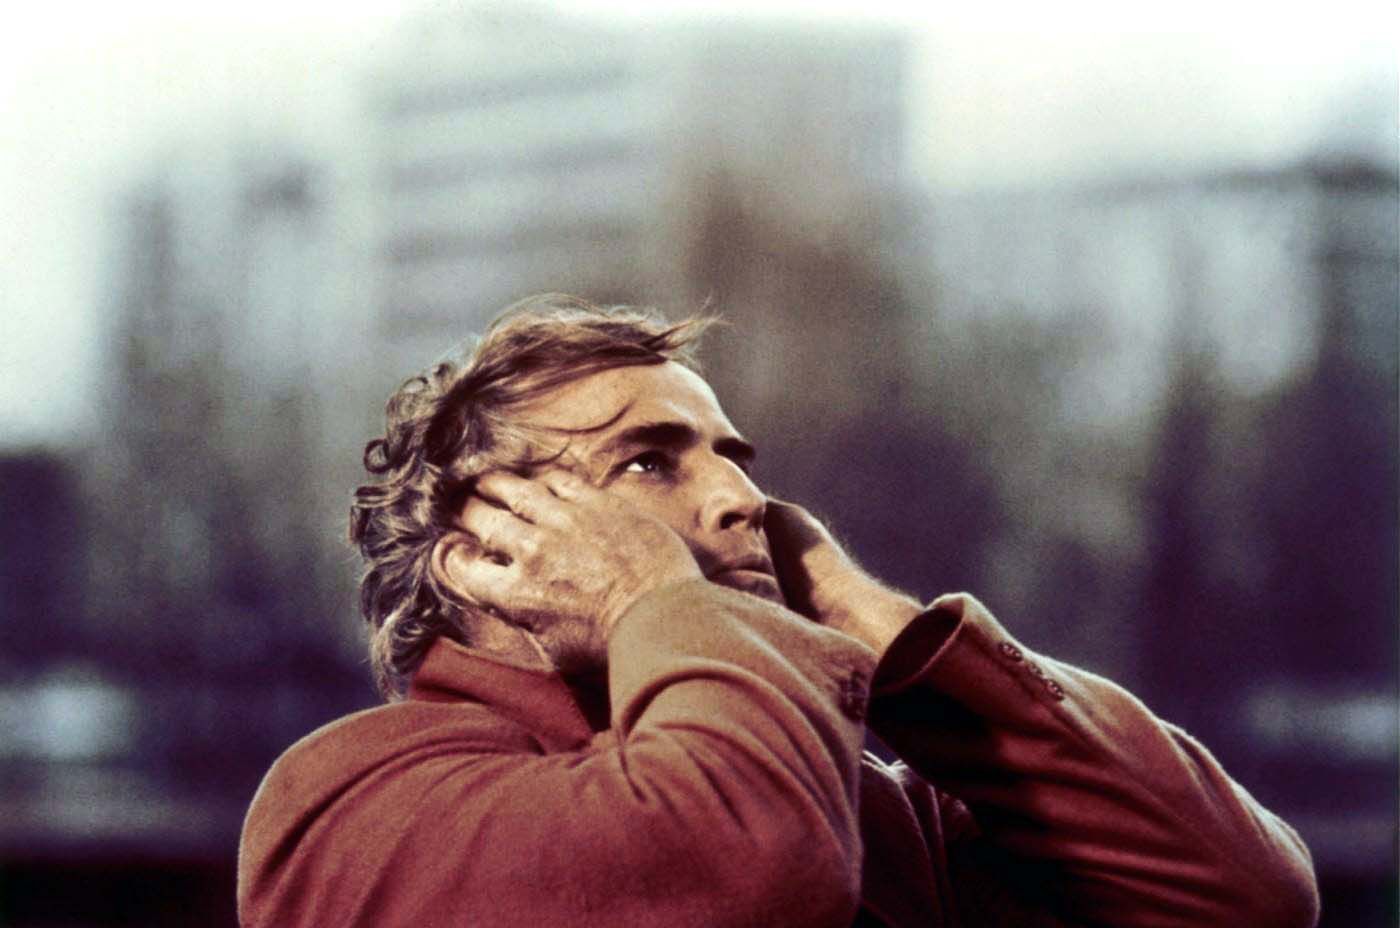 Marlon Brando, Poslední tango v Paříži, 1972